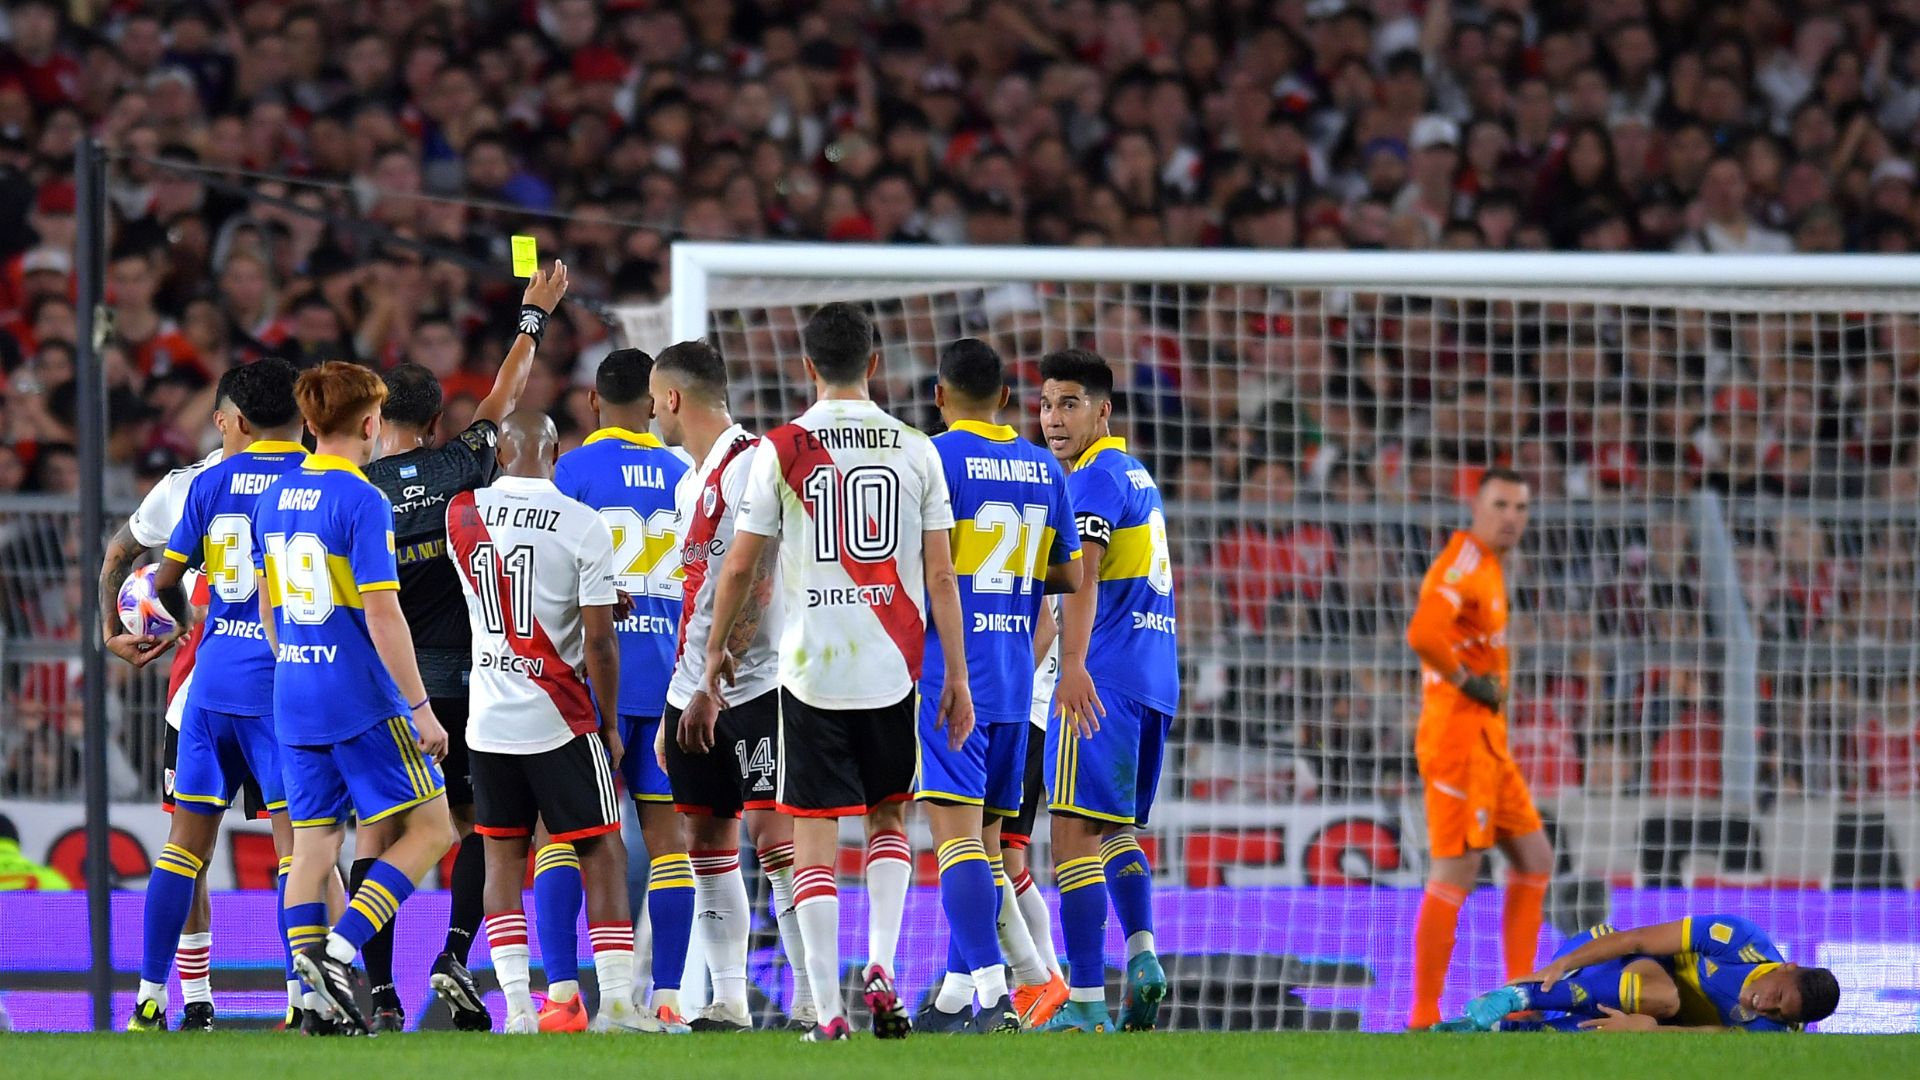 Foi instaurada uma briga generalizada dentro de campo após o gol de Borja, pelo River Plate (Crédito: Getty Images)